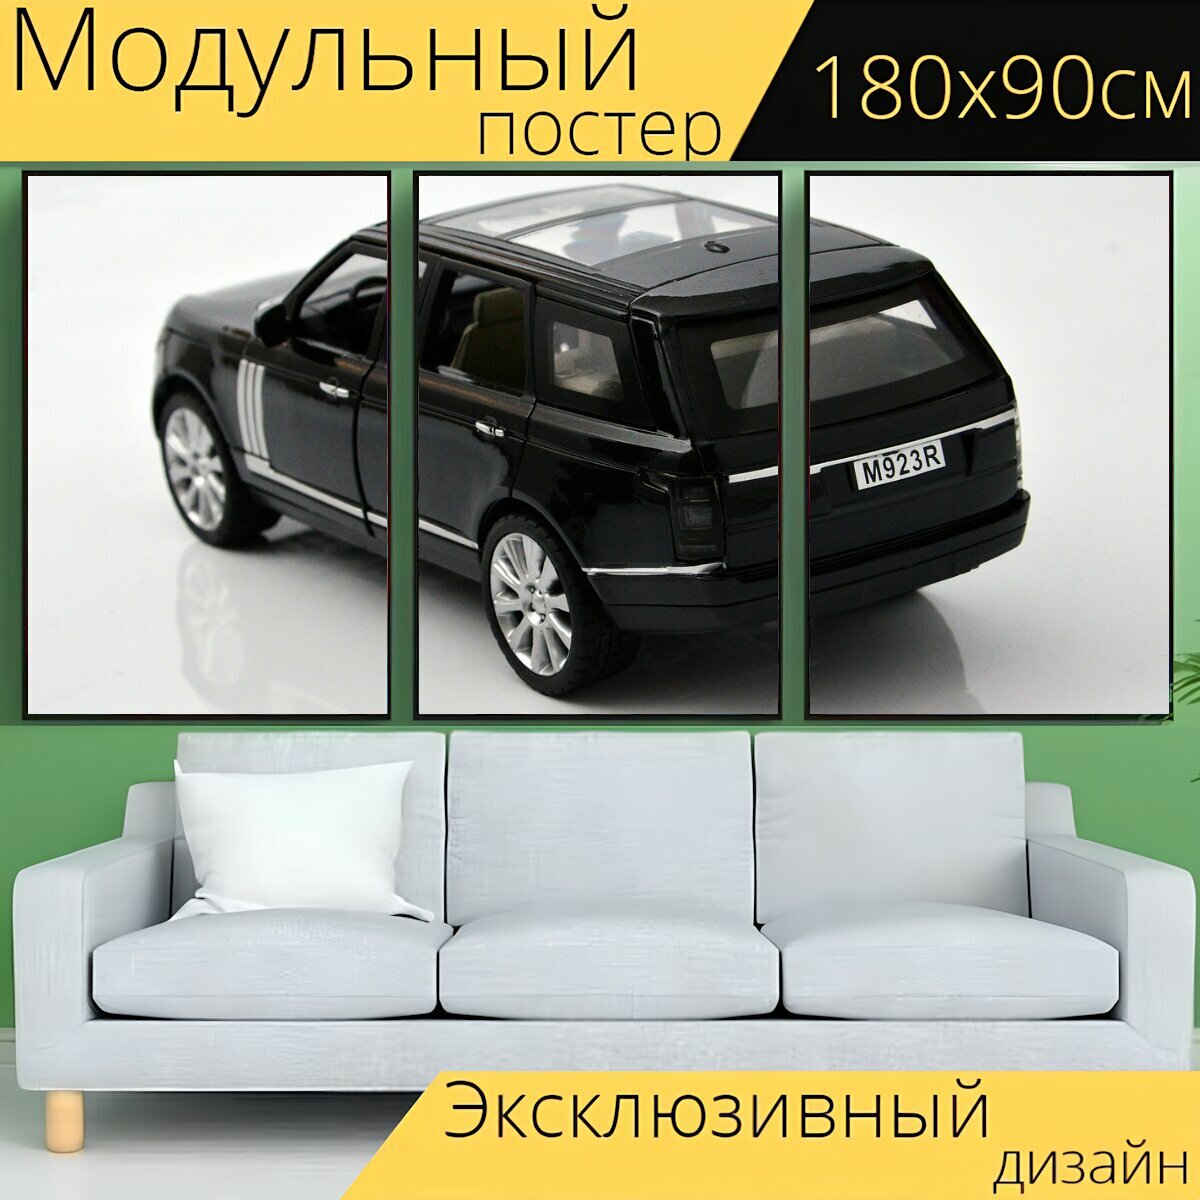 Модульный постер "Автомобиль, транспортное средство, транспорт" 180 x 90 см. для интерьера